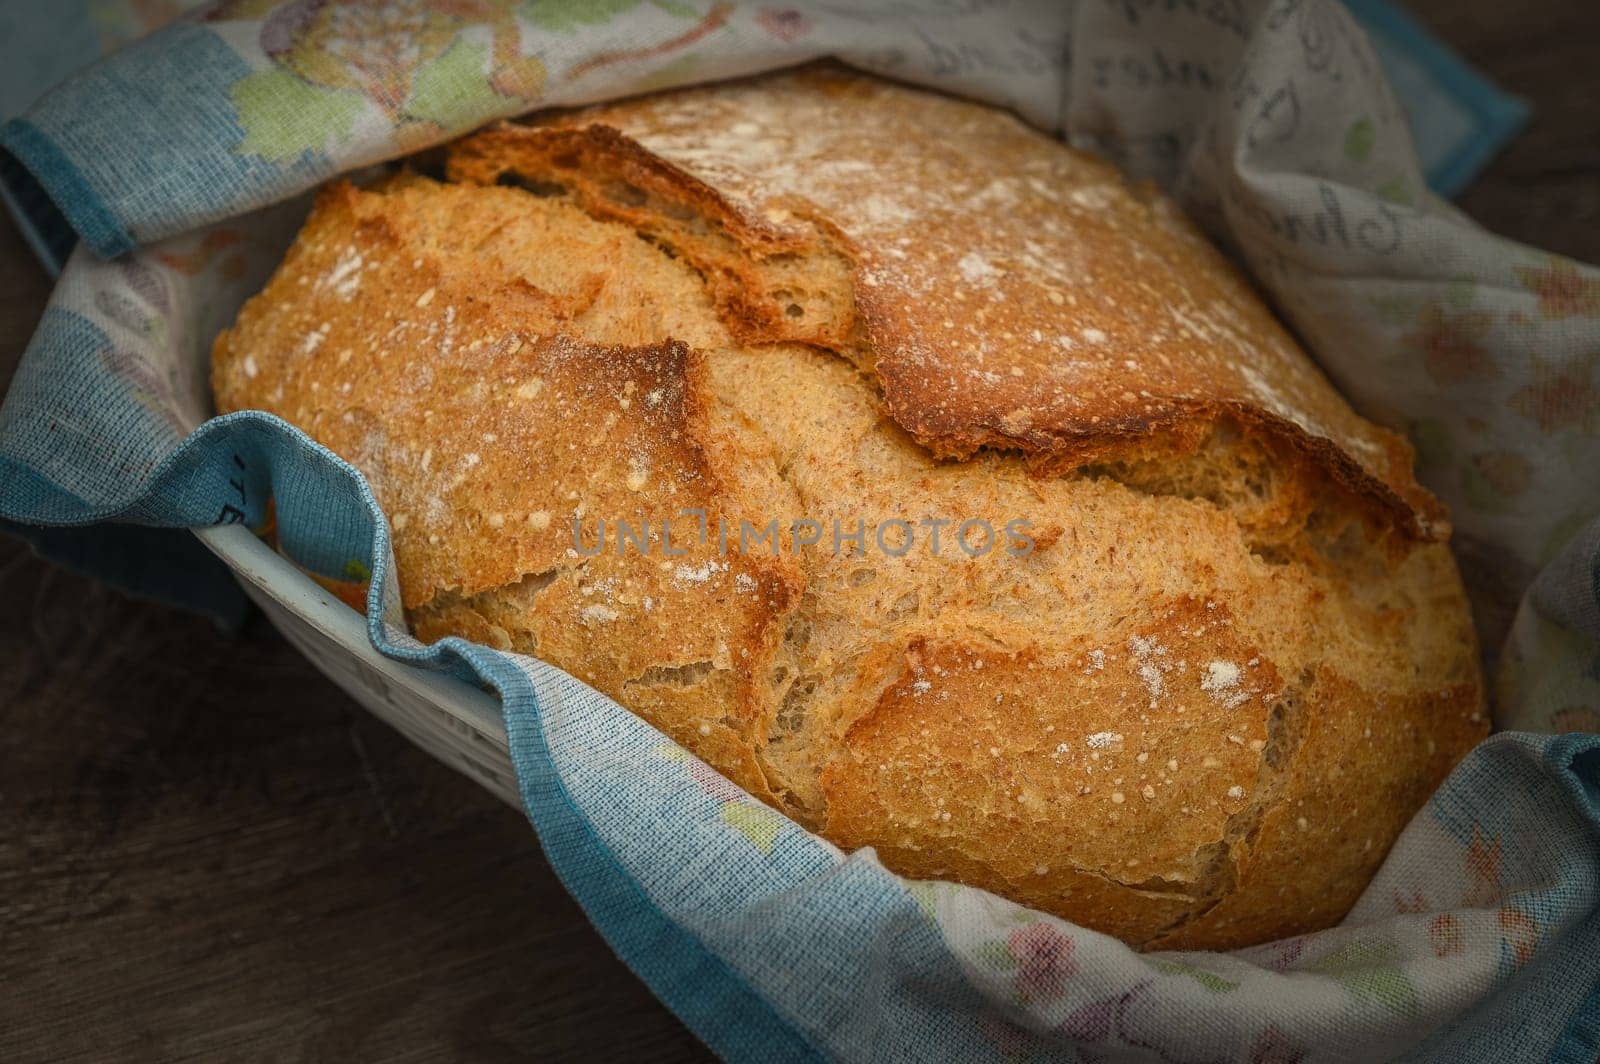 Freshly baked bread basking in warm sunlight by Mixa74